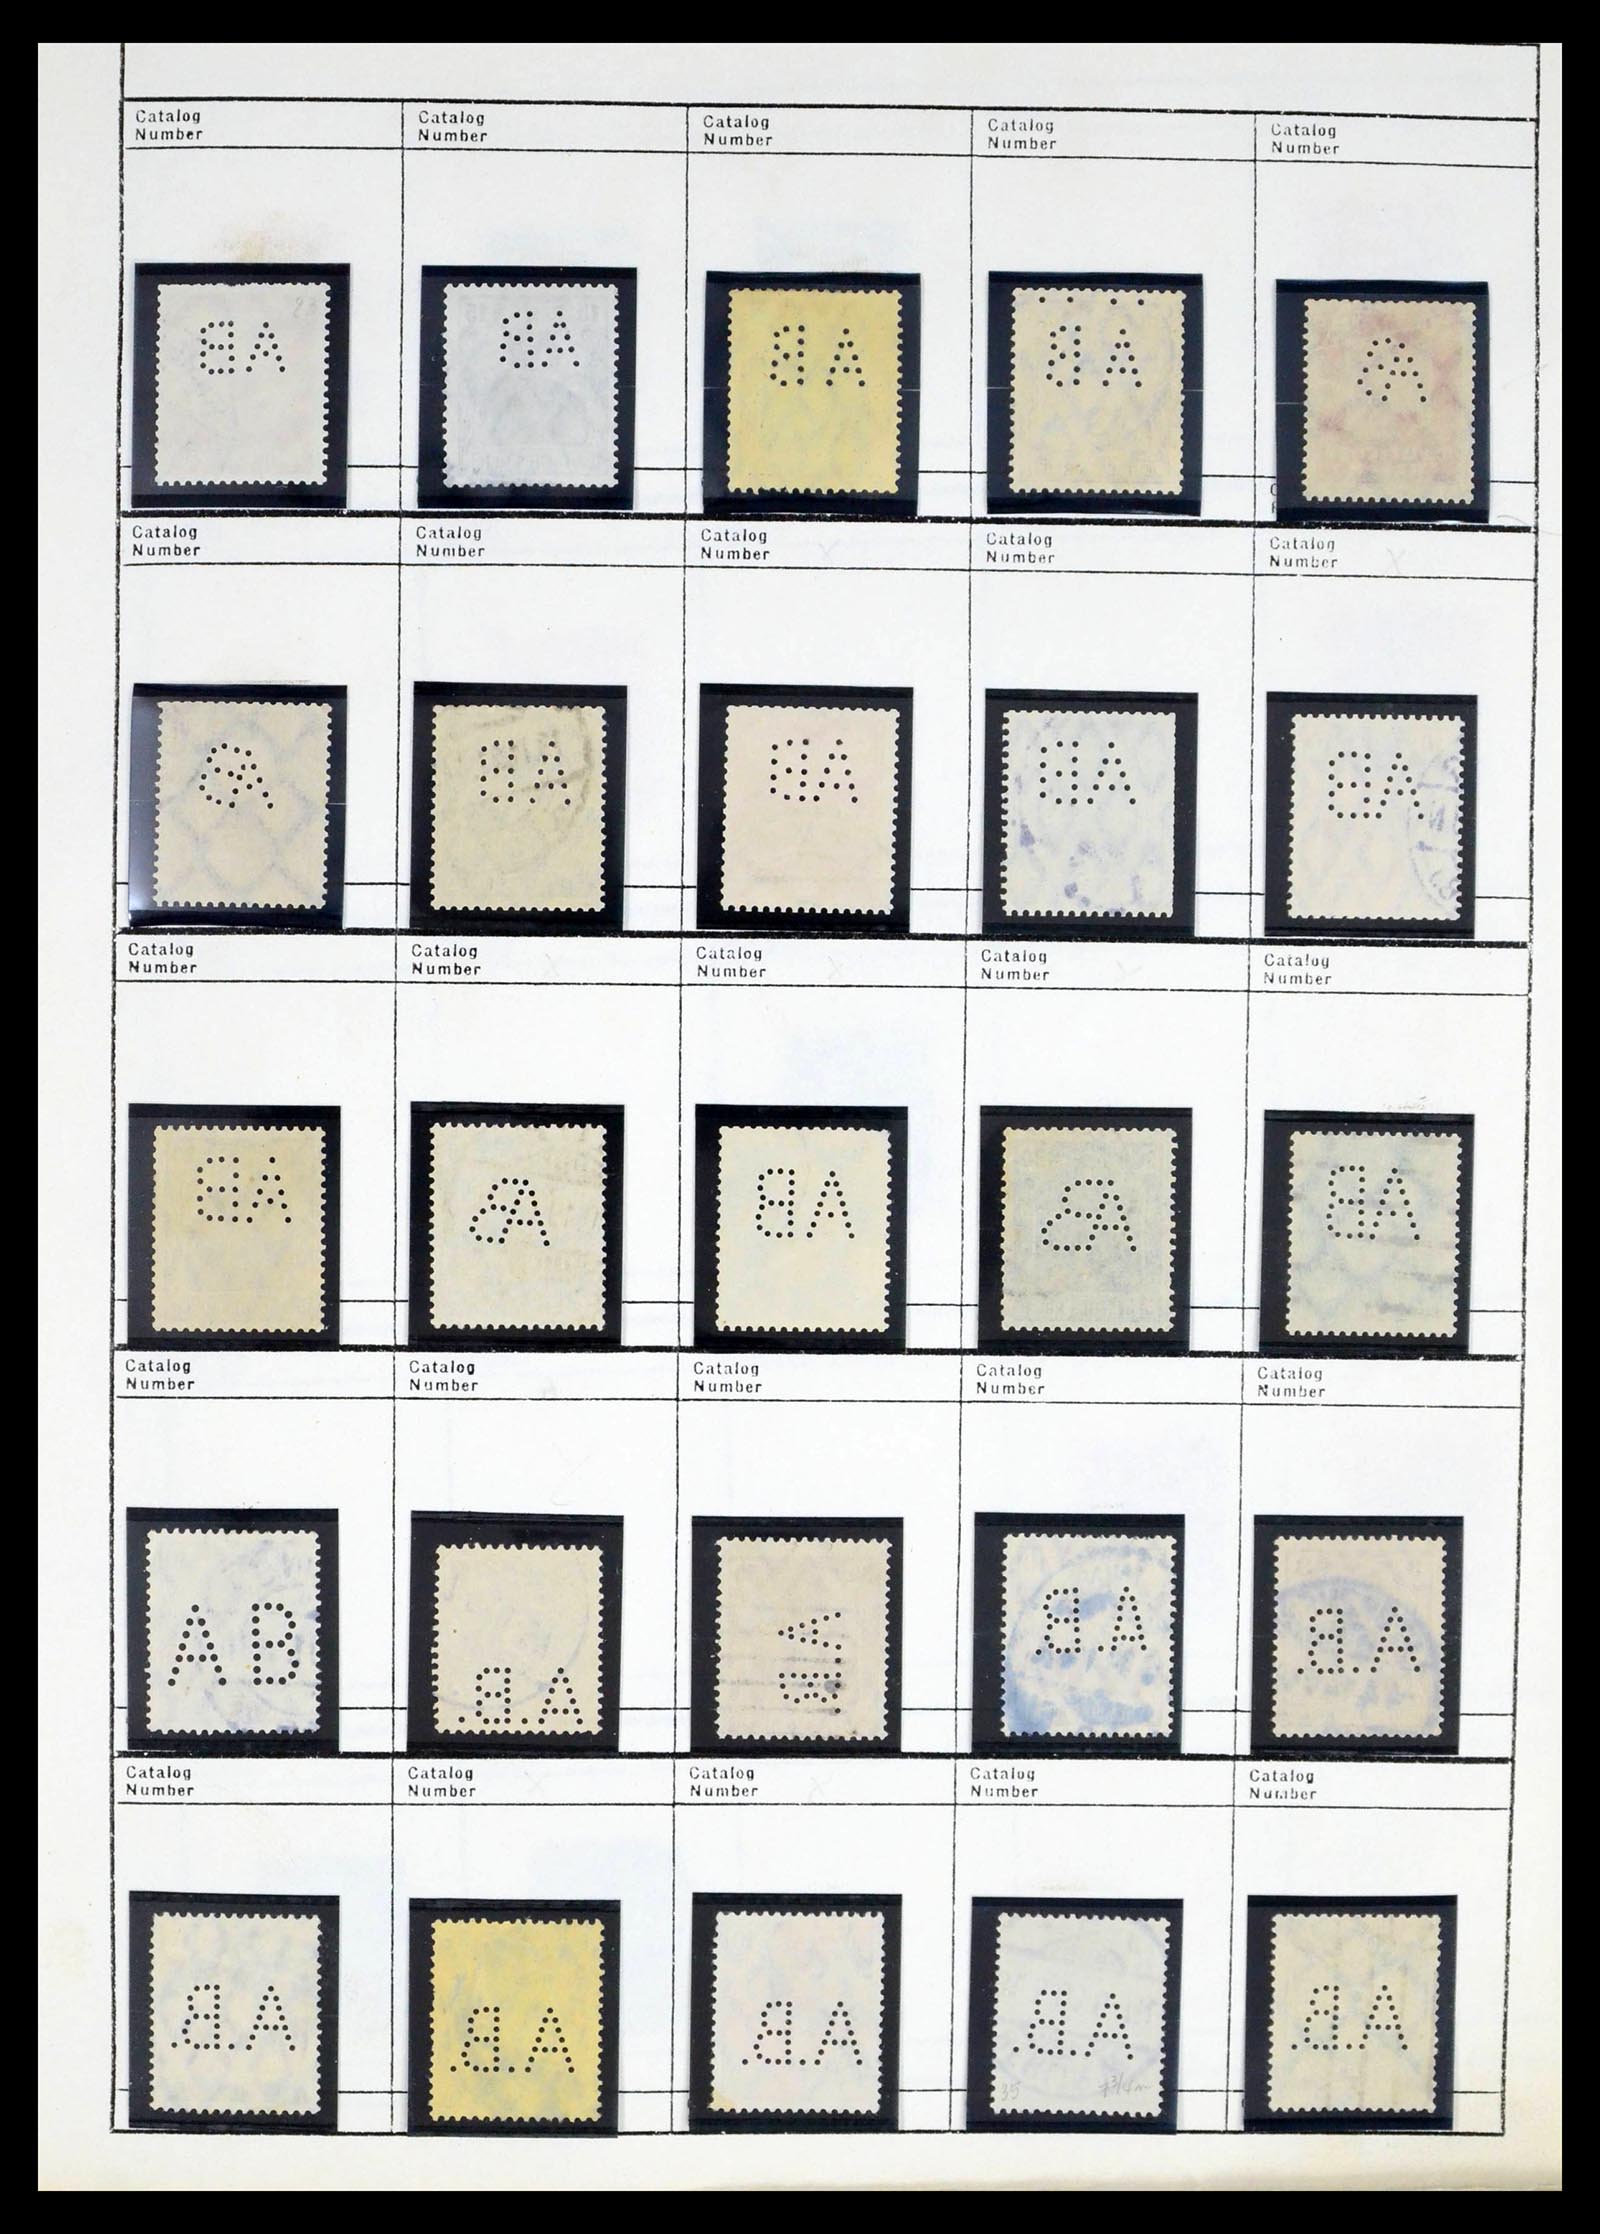 39480 0006 - Stamp collection 39480 German Reich perfins 1880-1955.